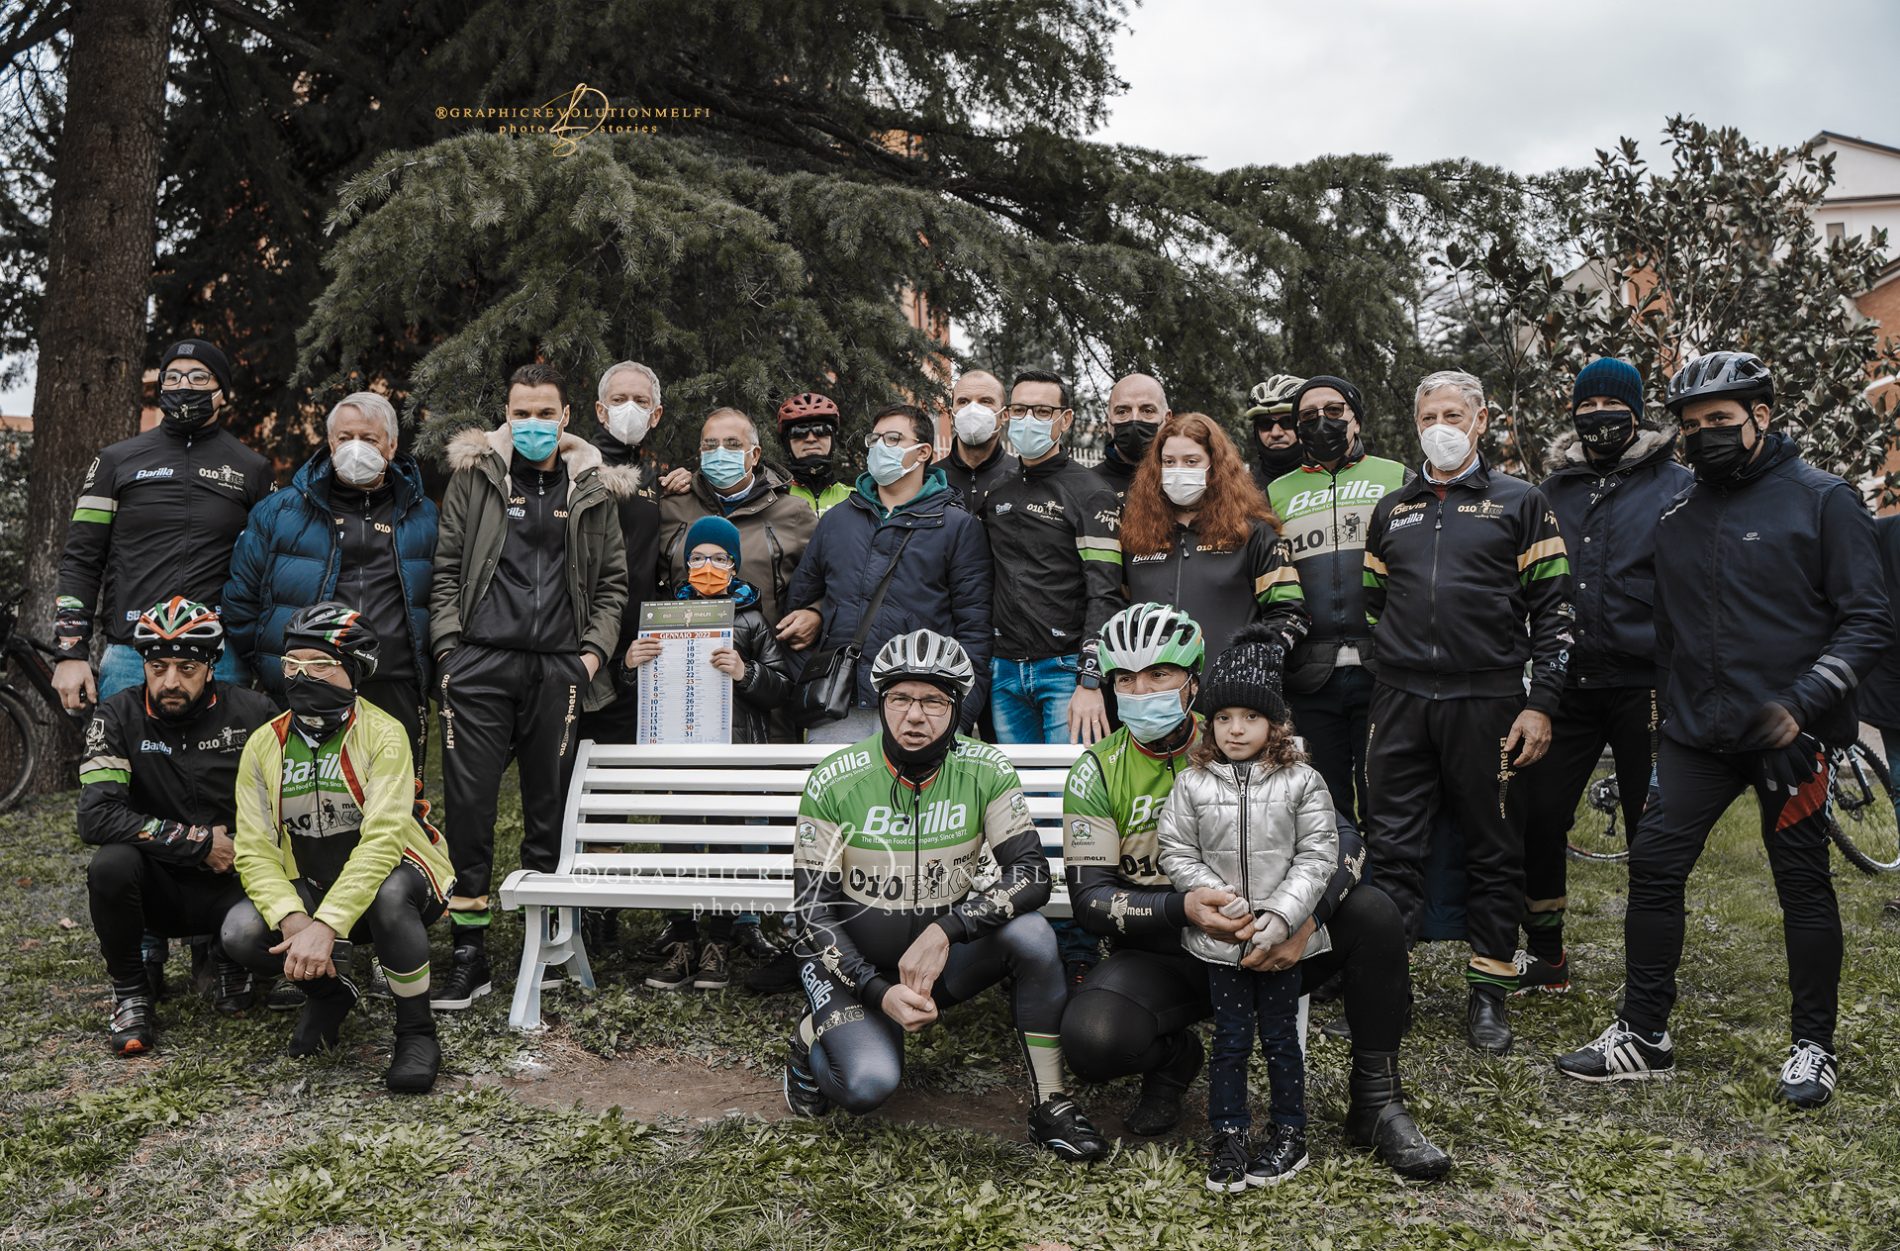 Una panchina bianca a Melfi per le vittime della strada Team 010 bike ciclisti melfi